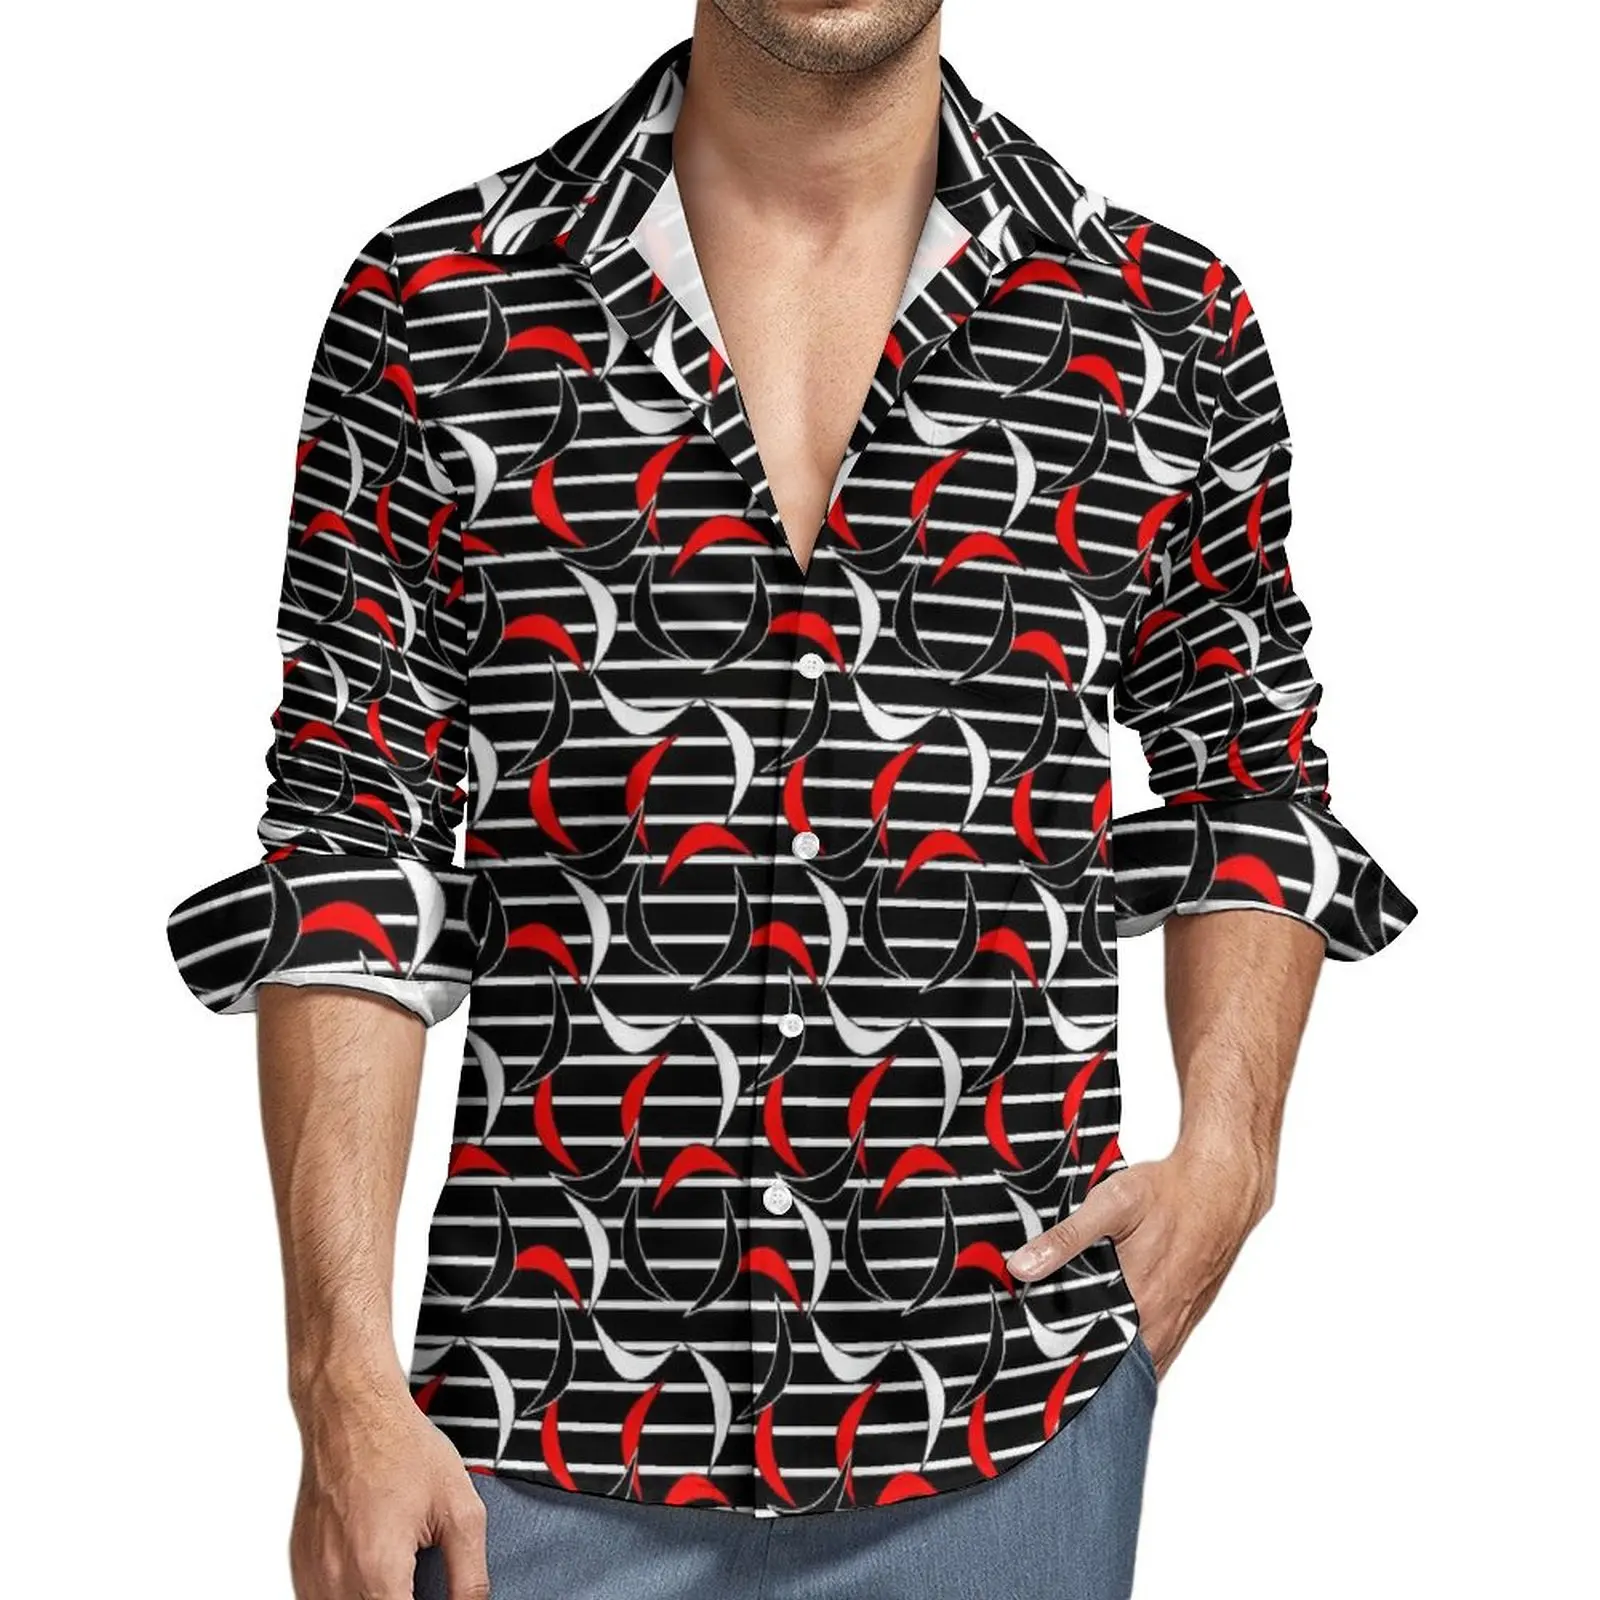 

Повседневная рубашка с принтом полумесяца, мужская стильная рубашка в белую и красную полоску, Осенние винтажные блузки с длинным рукавом, Одежда большого размера с принтом